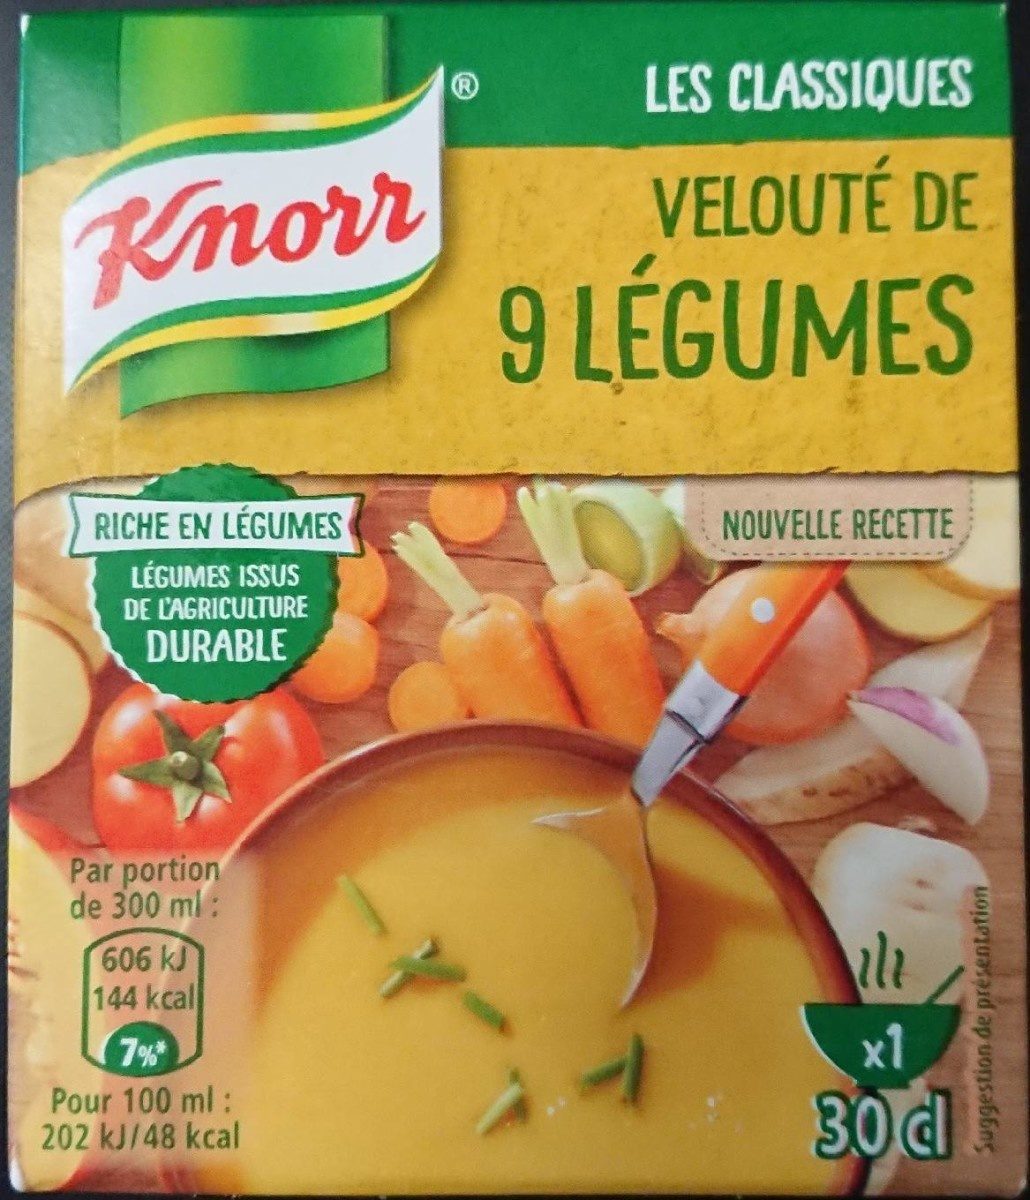 Knorr Soupe Liquide Velouté de 9 Légumes Brique 30cl - Product - fr